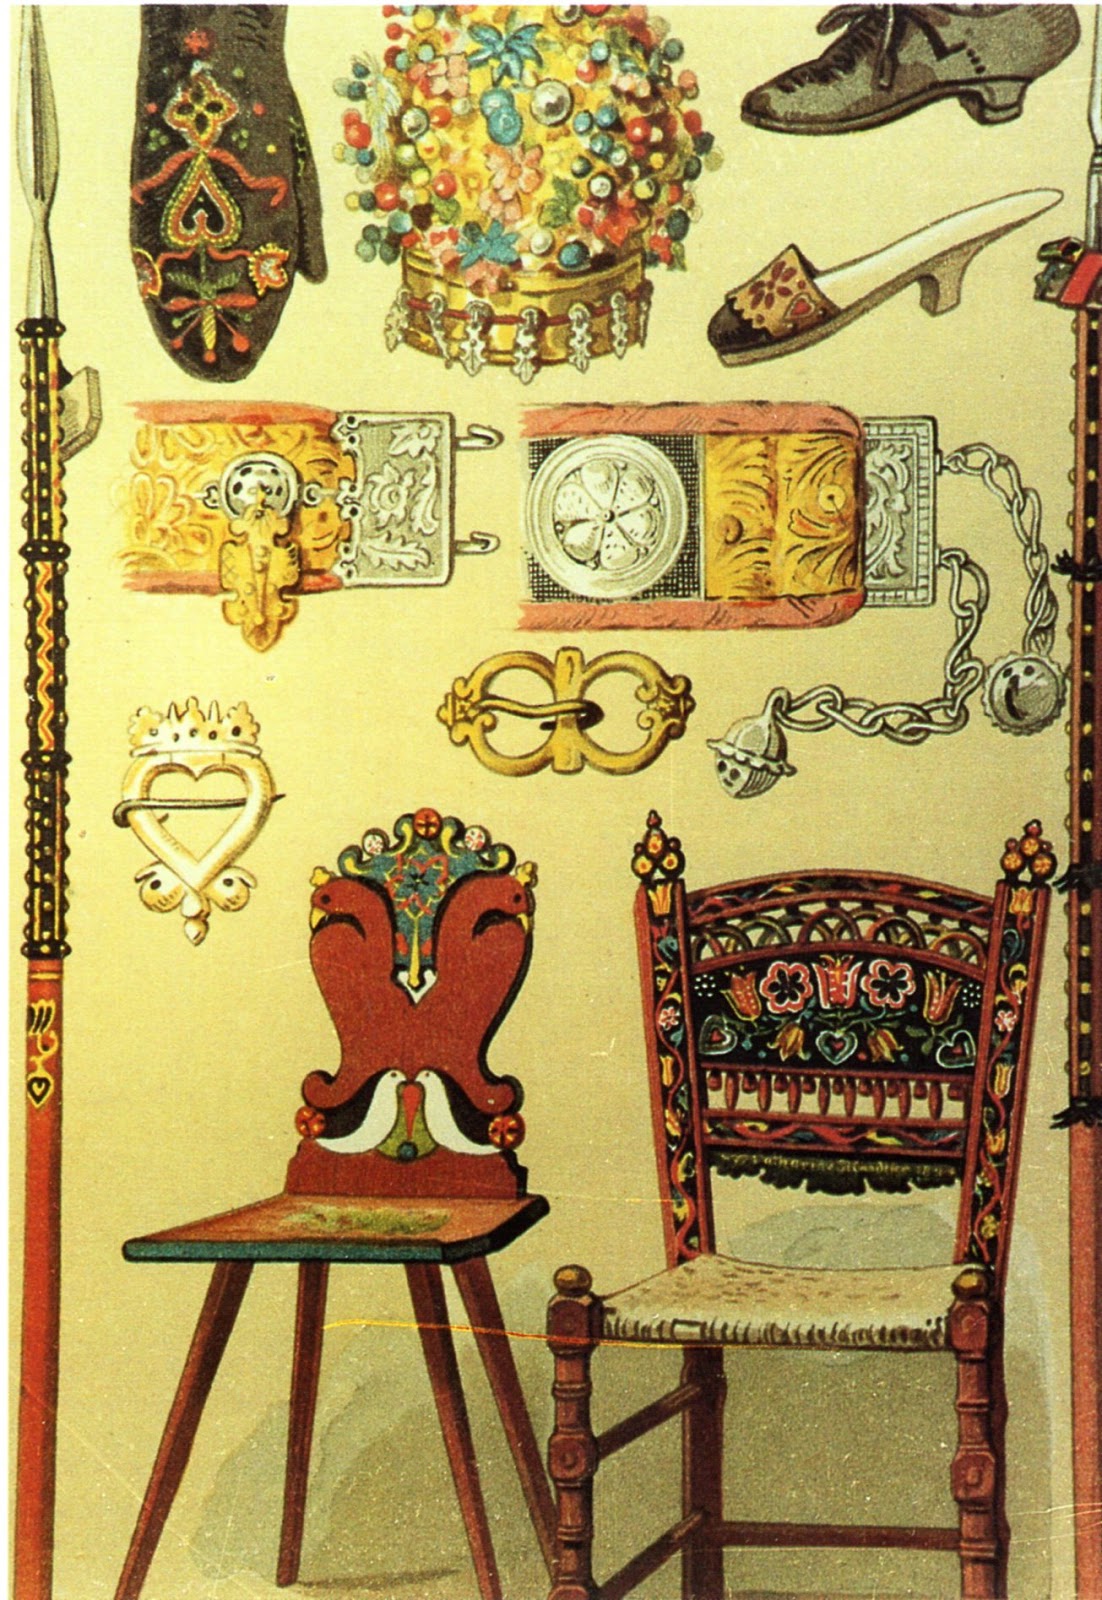 FolkCostume&Embroidery: Costume of Jamund-Jamno, Pomerania